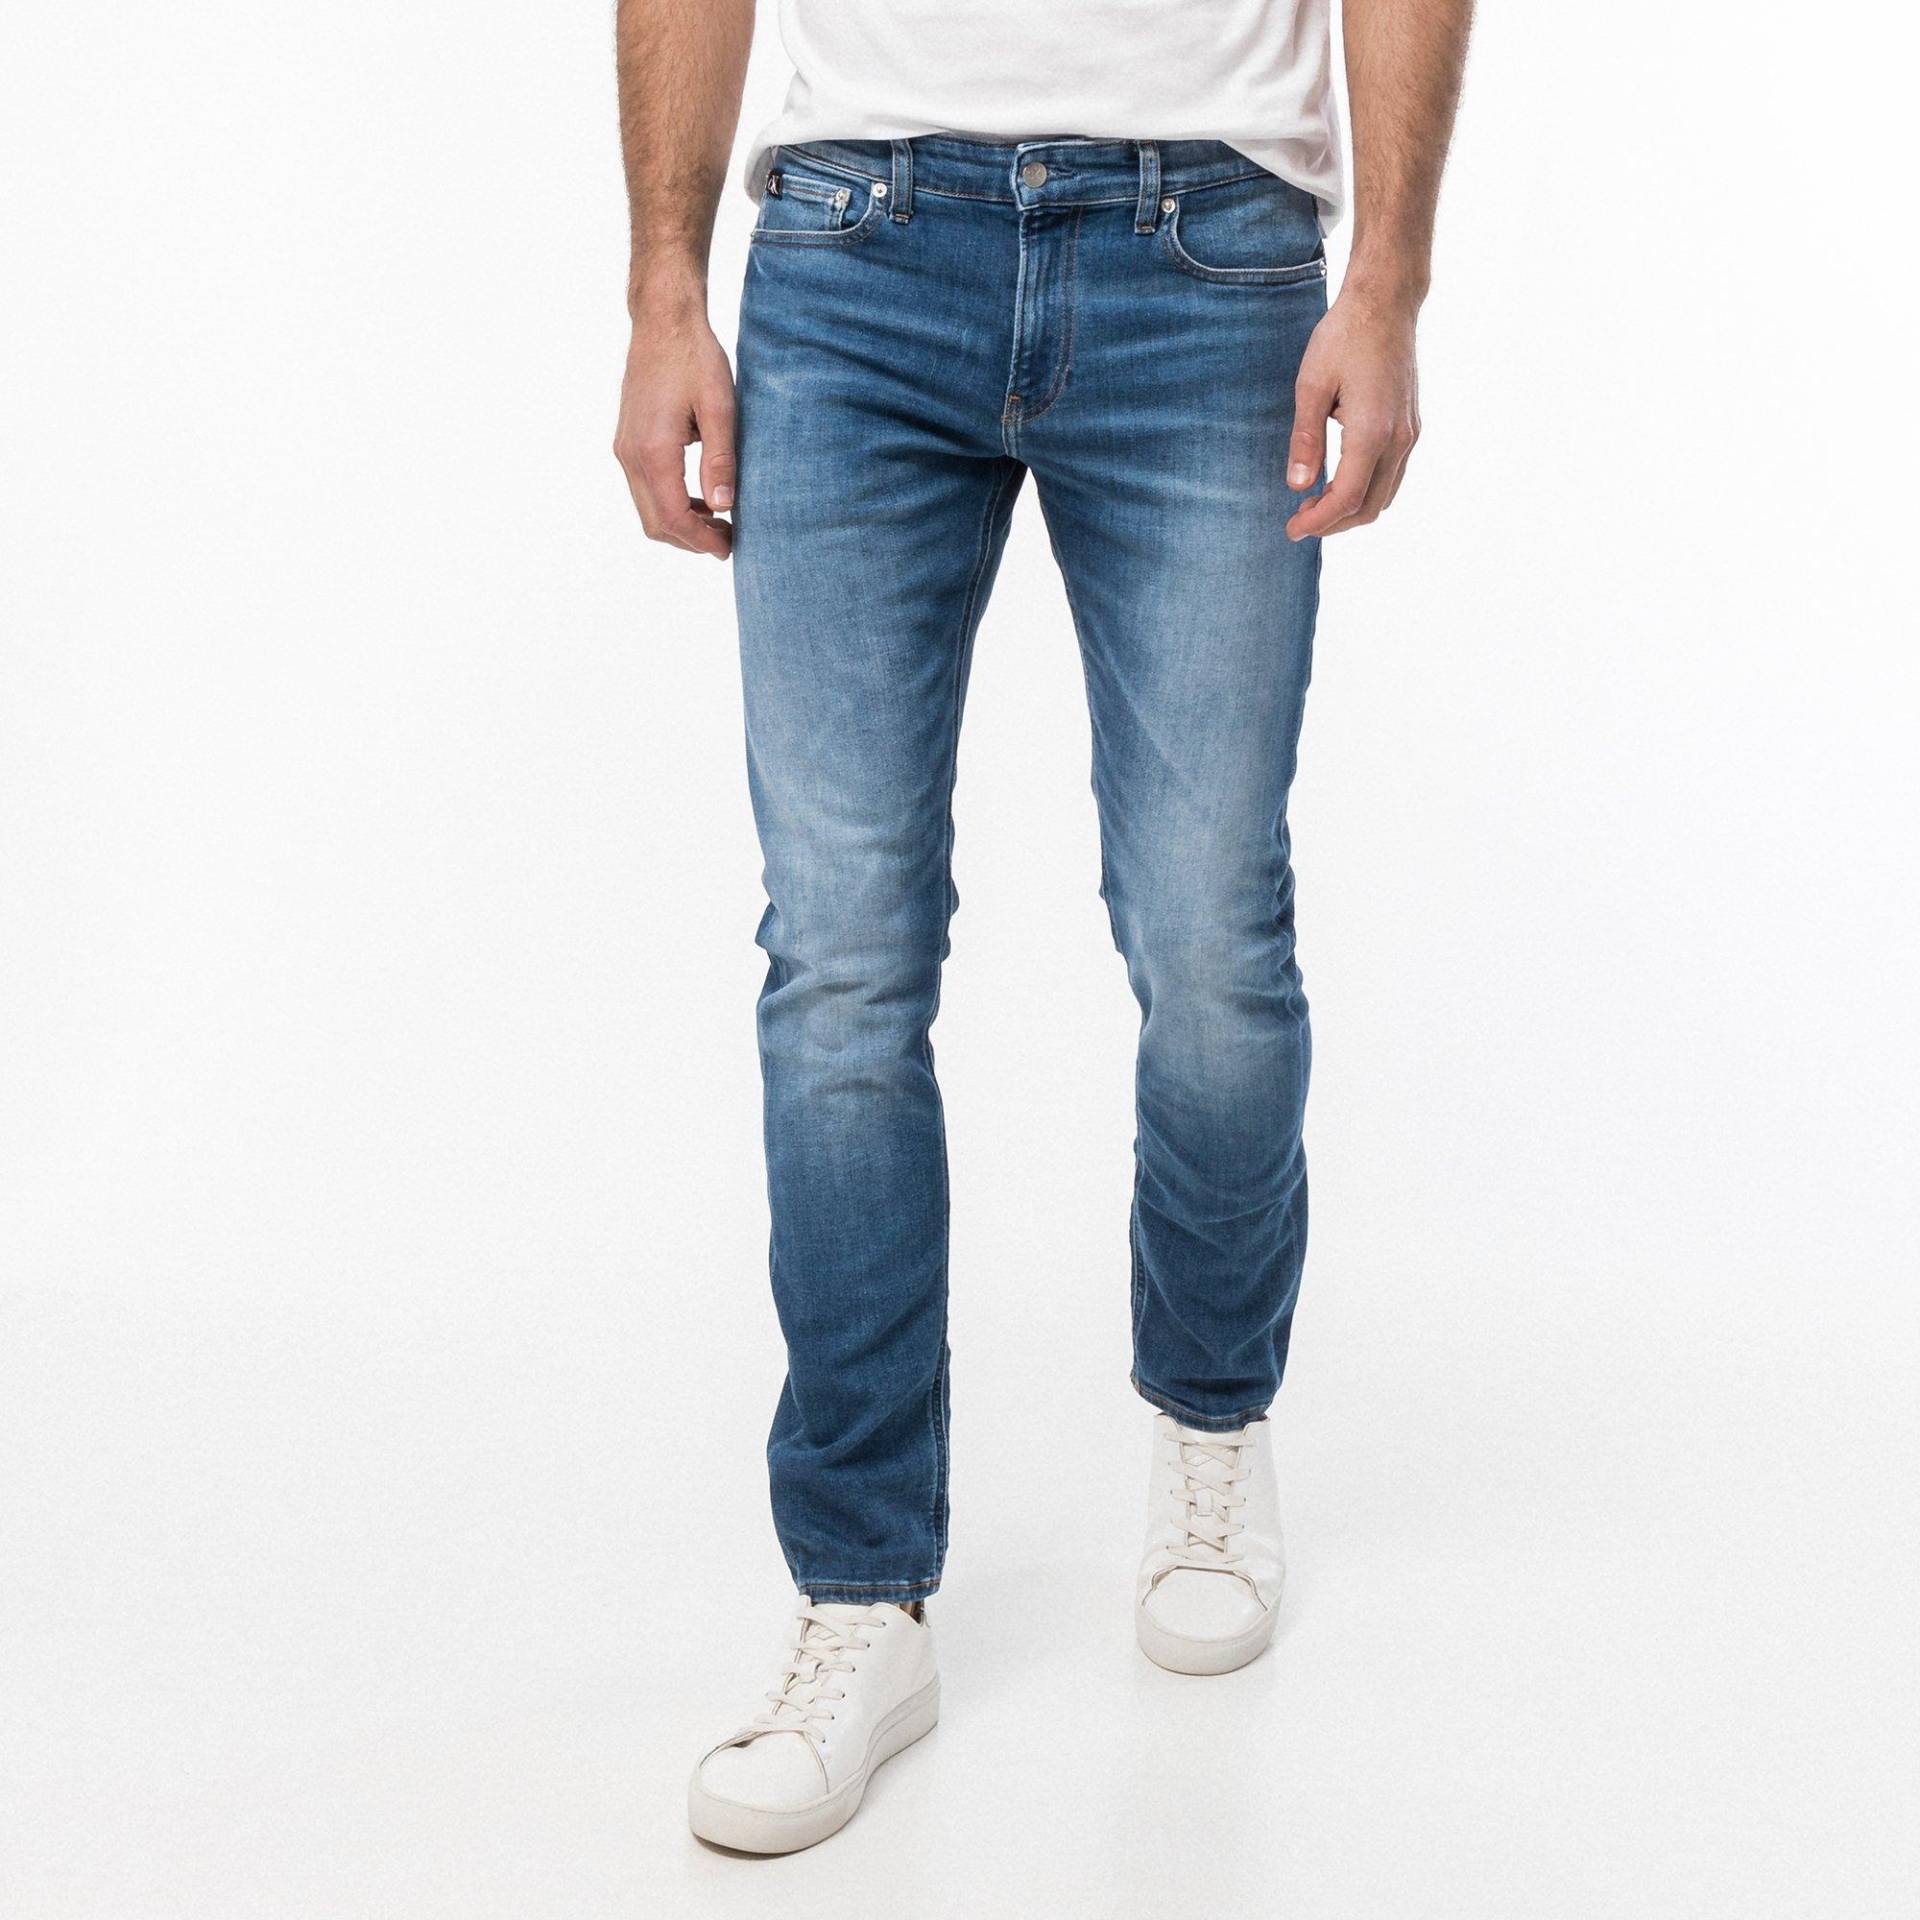 Jeans, Slim Fit Herren Blau L32/W31 von Calvin Klein Jeans